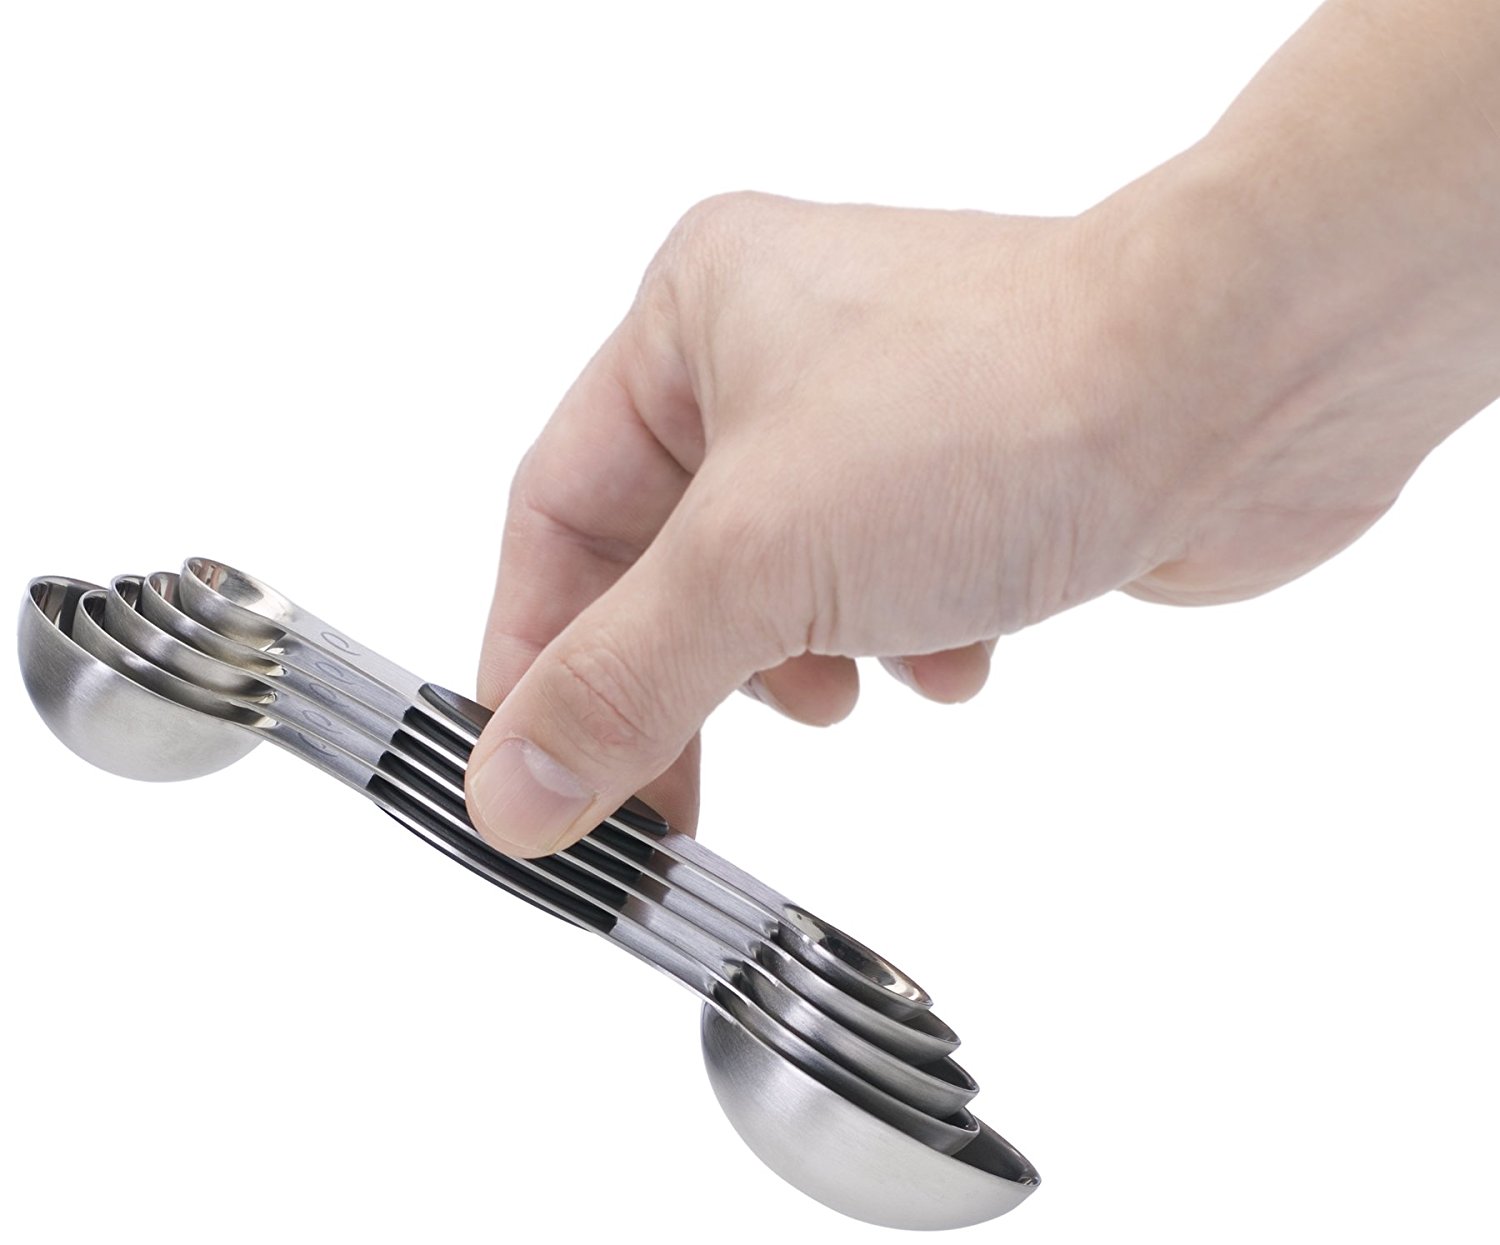 Prepworks magnetic measuring spoons. ($15 for set of 5)